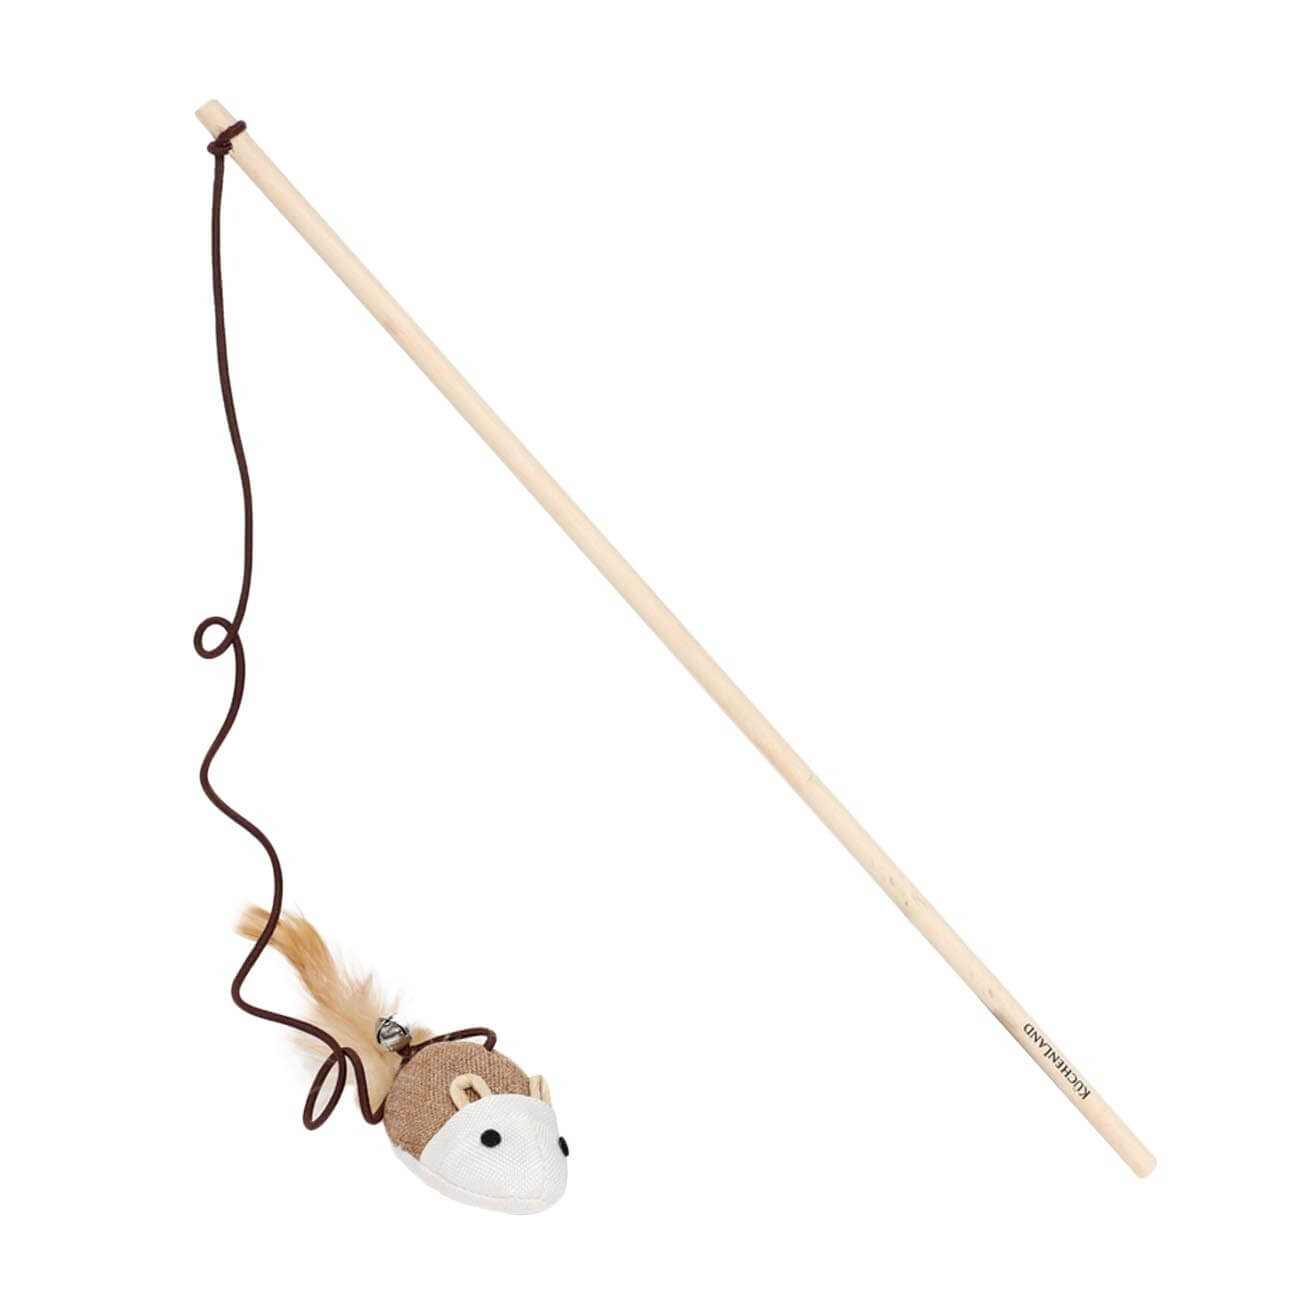 Игрушка-удочка для кошек, 1,1 м, с колокольчиком, дерево/полиэстер, Мышь, Playful cat